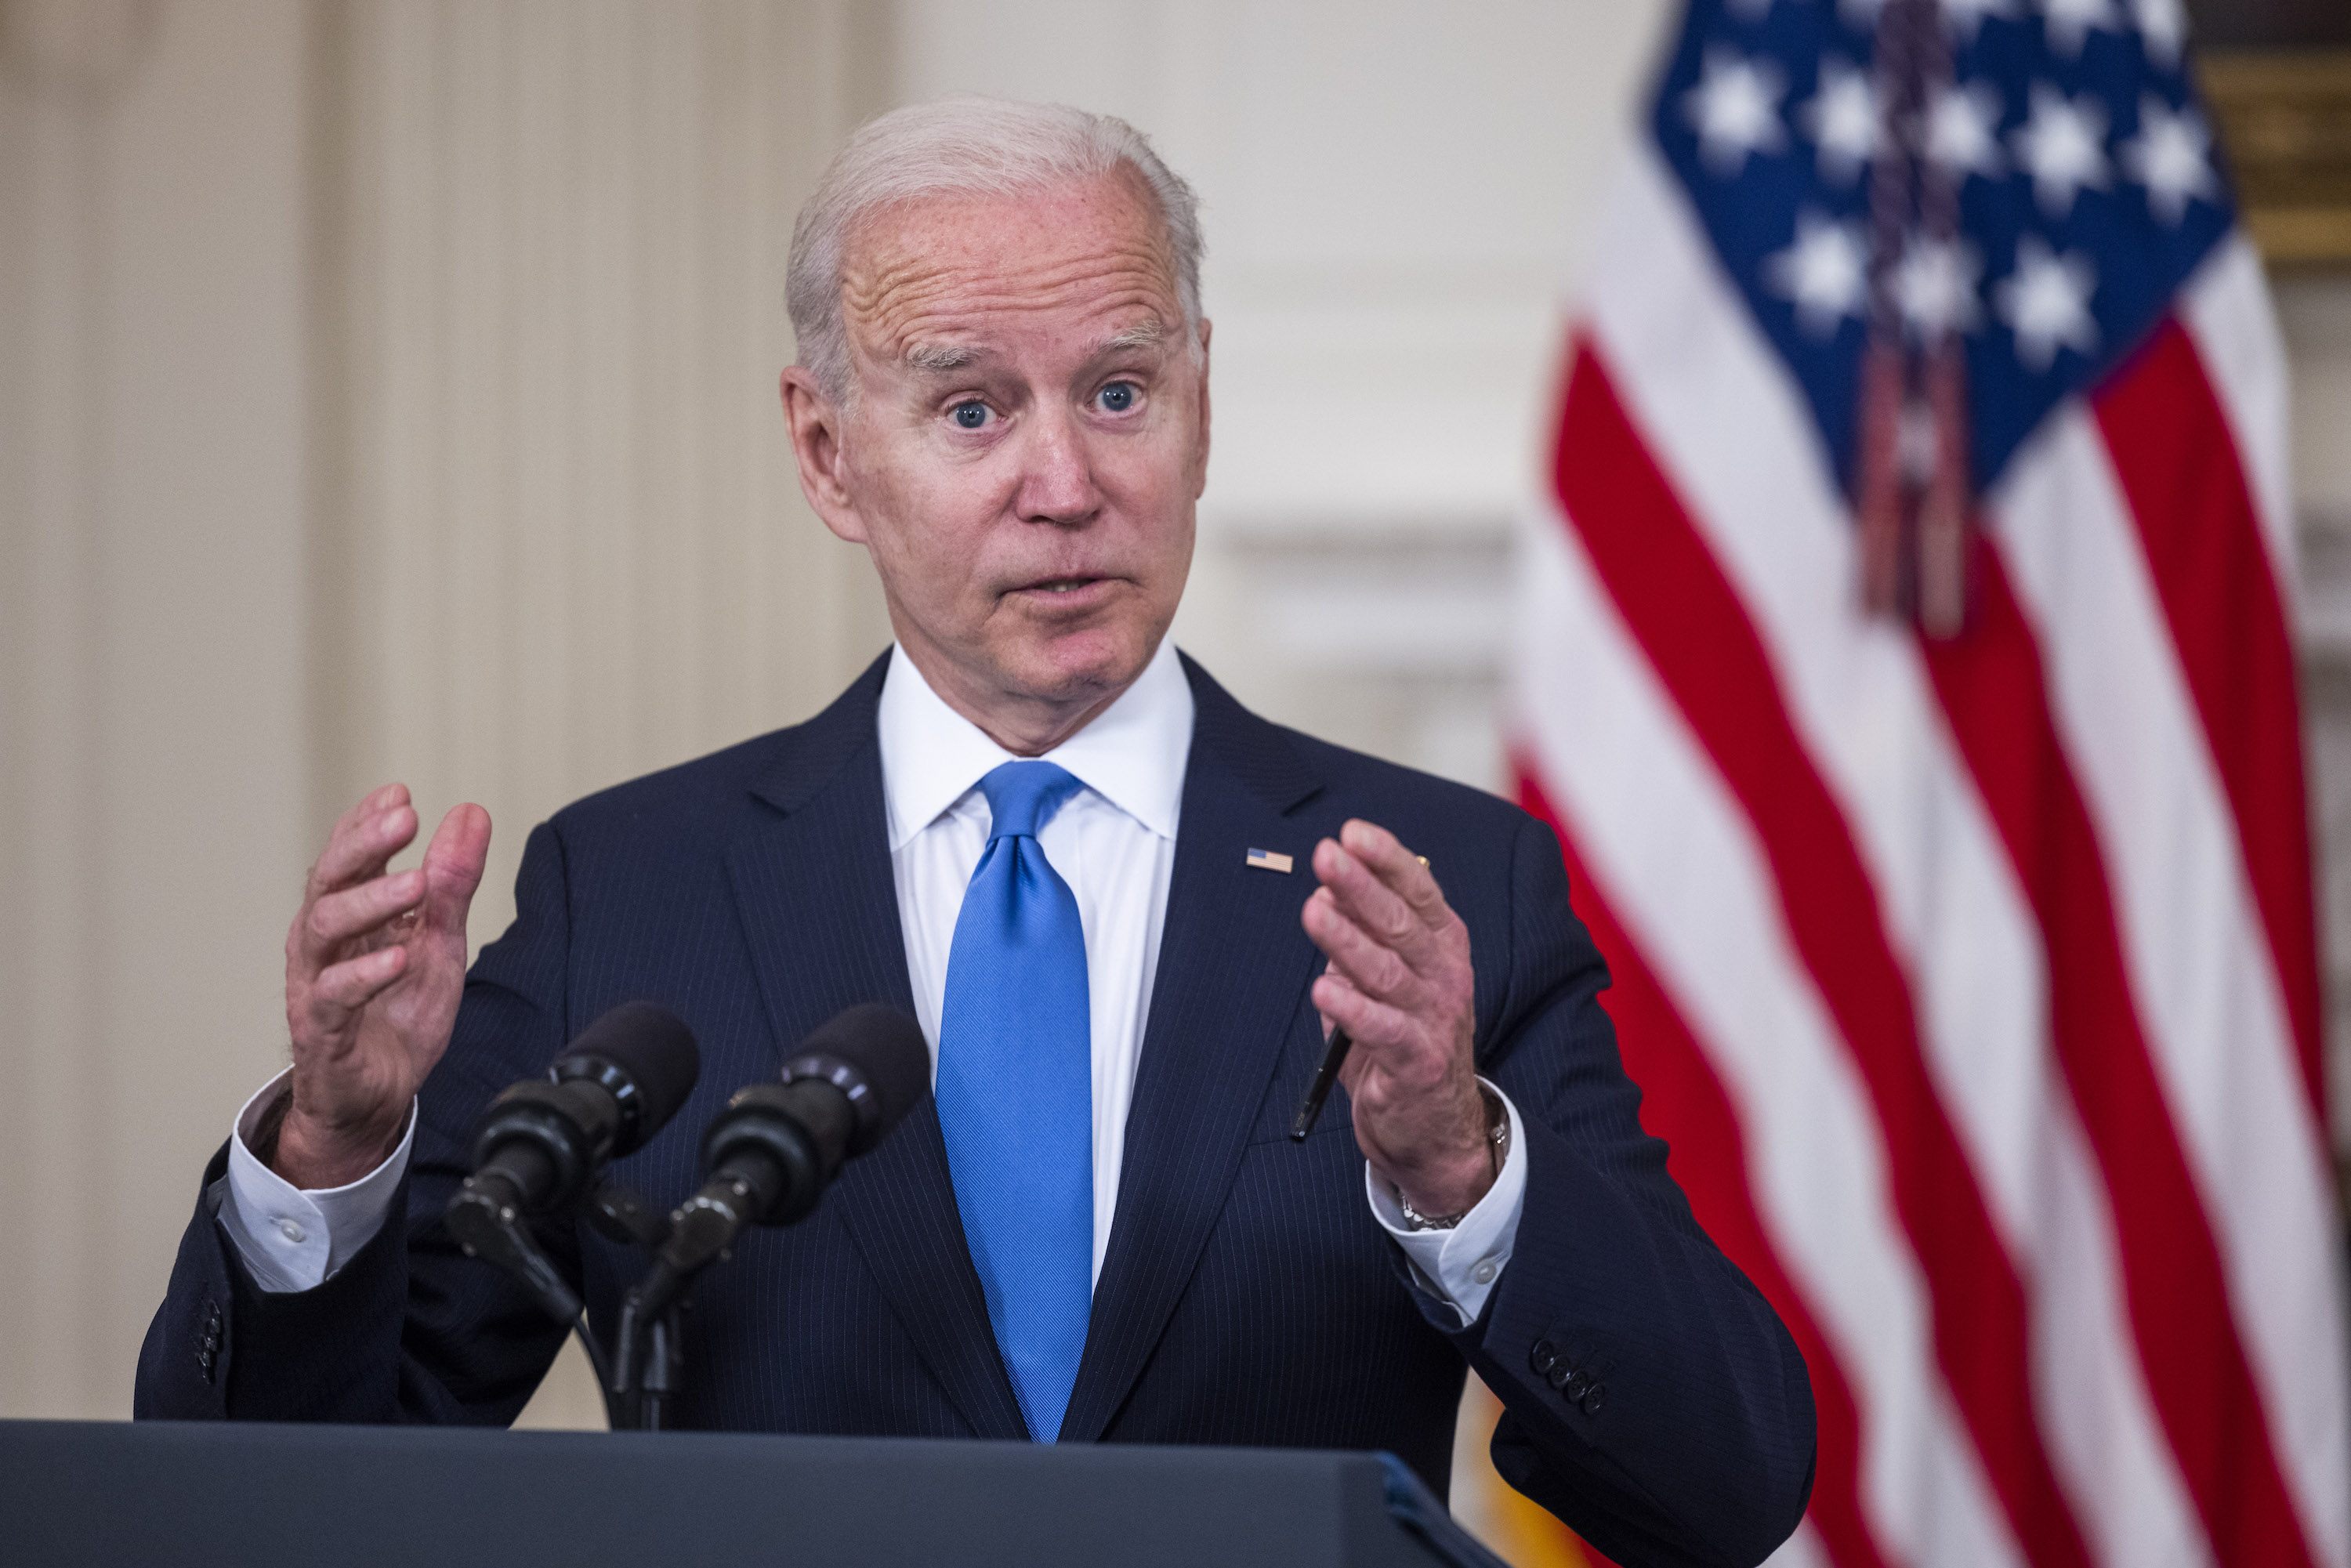 President Biden's 4th stimulus plan review